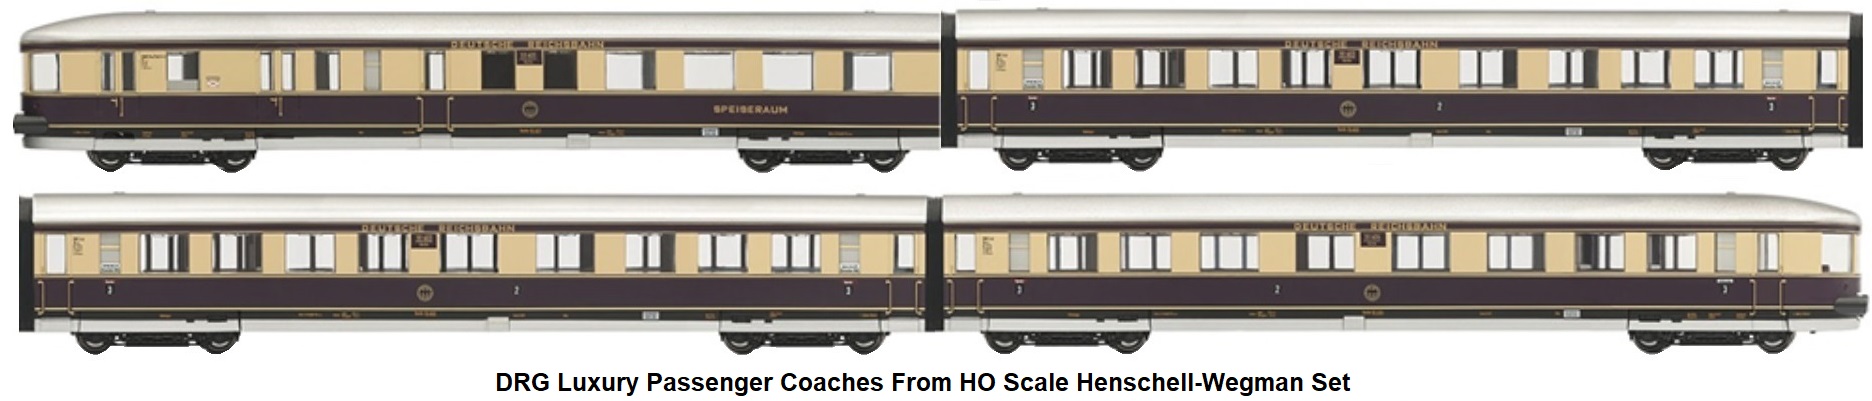 Rivarossi HO gauge Henschell-Wegmann 4-6-4T Streamlined Passenger train set